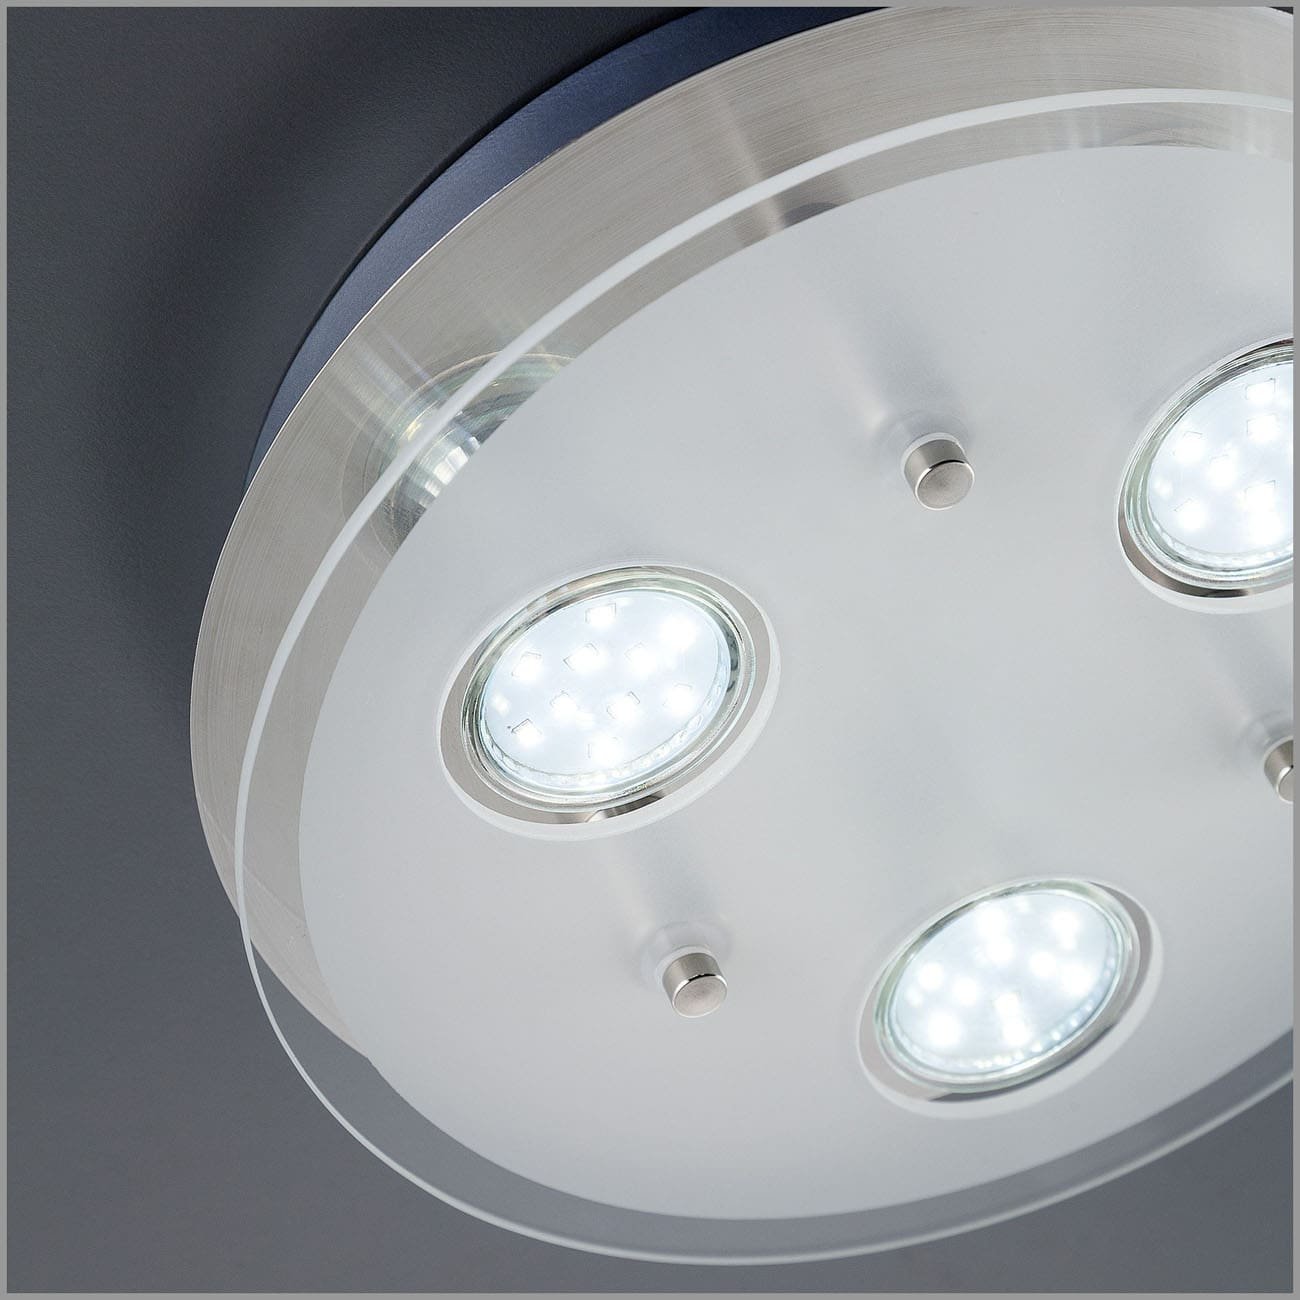 LED Deckenleuchte rund 25x7 cm - 3-flammig - moderne Deckenlampe Glas Metall GU10 9W 750lm warmweiß | Matt-Nickel - 4